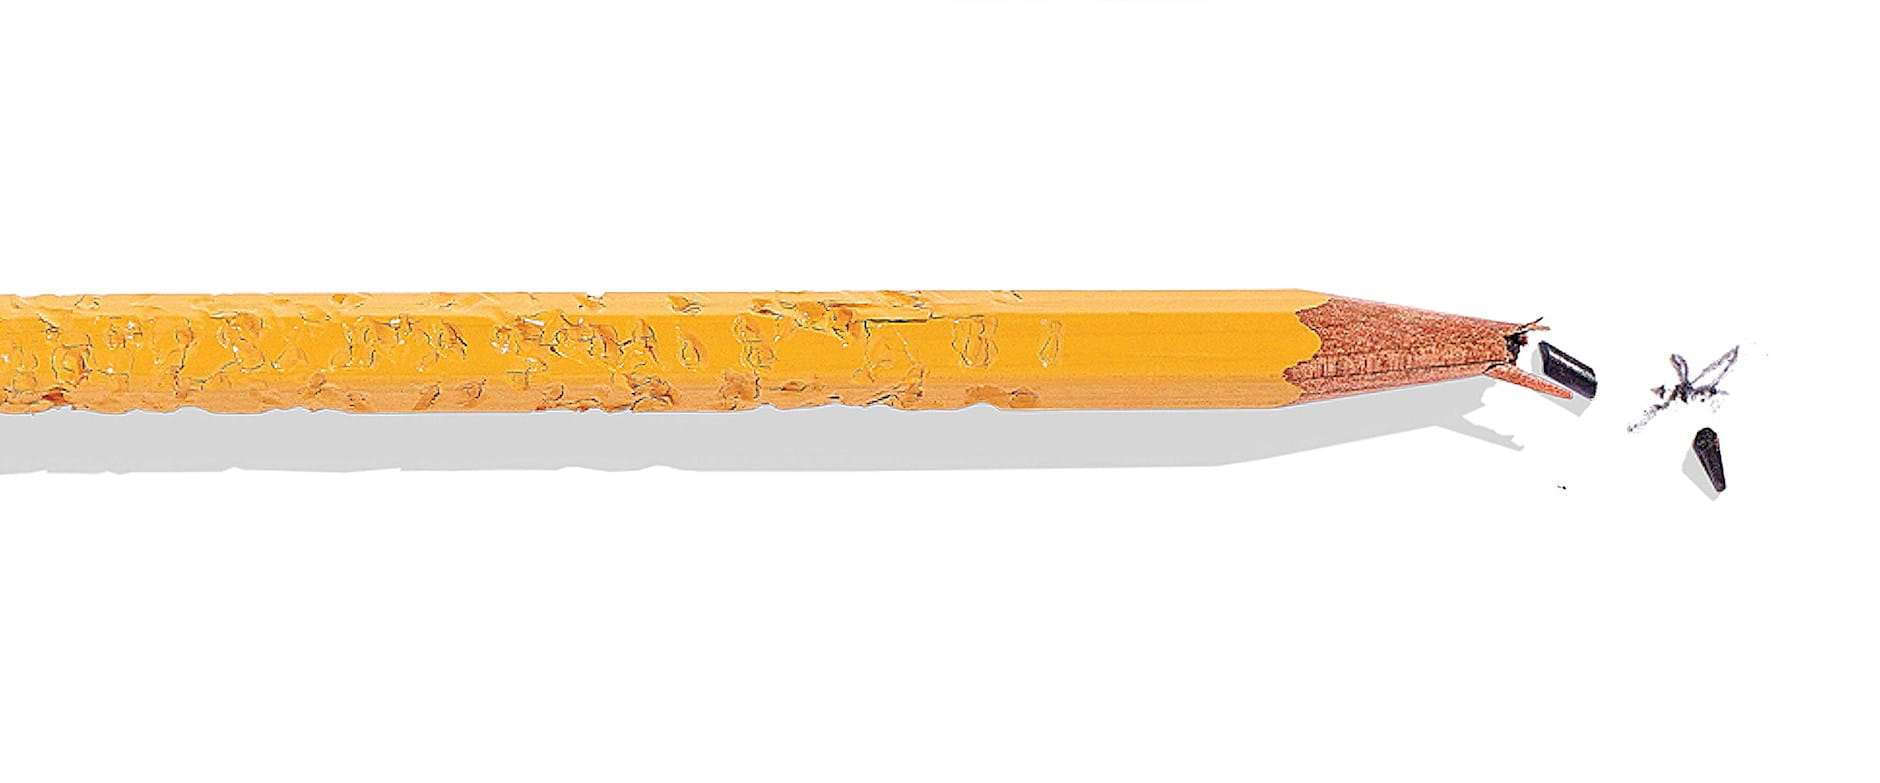 Pencil with broken tip